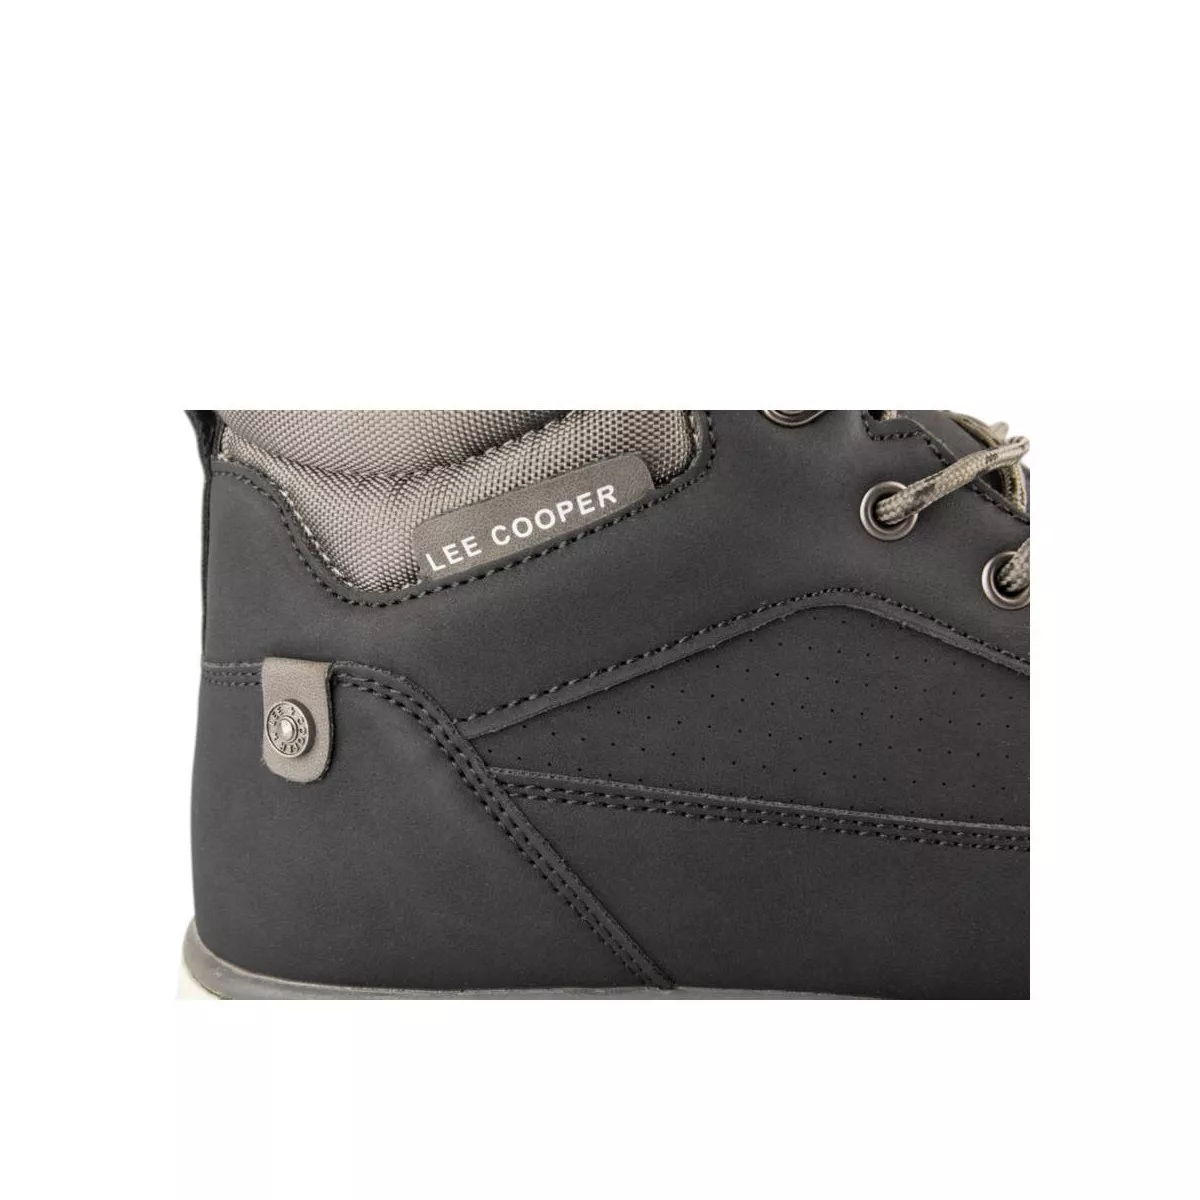 Wallet & purses Bags LC-667914-NOIR LEE COOPER | Efashion Paris on eFashion.